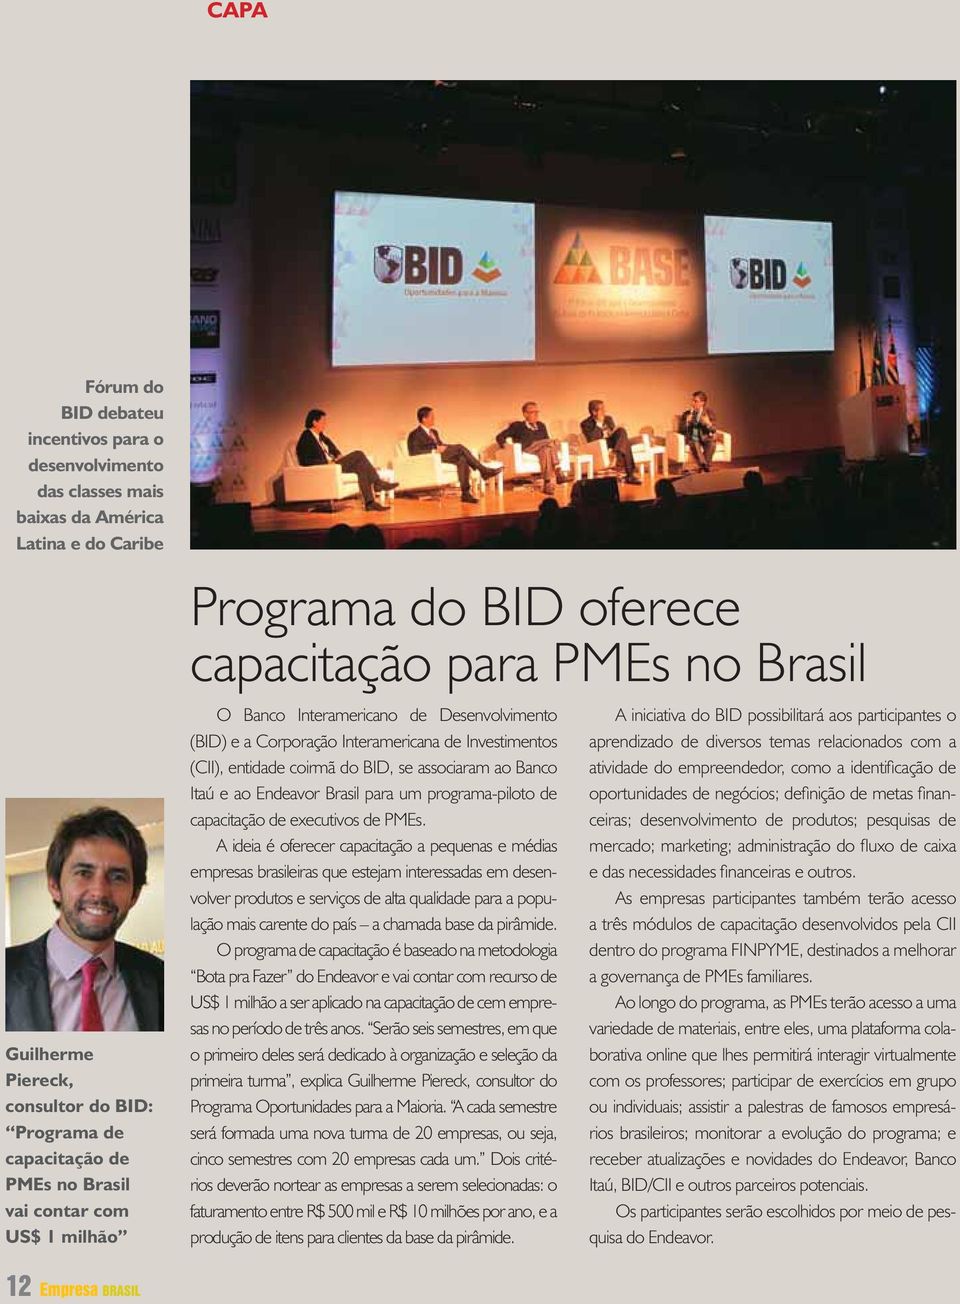 do BID, se associaram ao Banco Itaú e ao Endeavor Brasil para um programa-piloto de capacitação de executivos de PMEs.